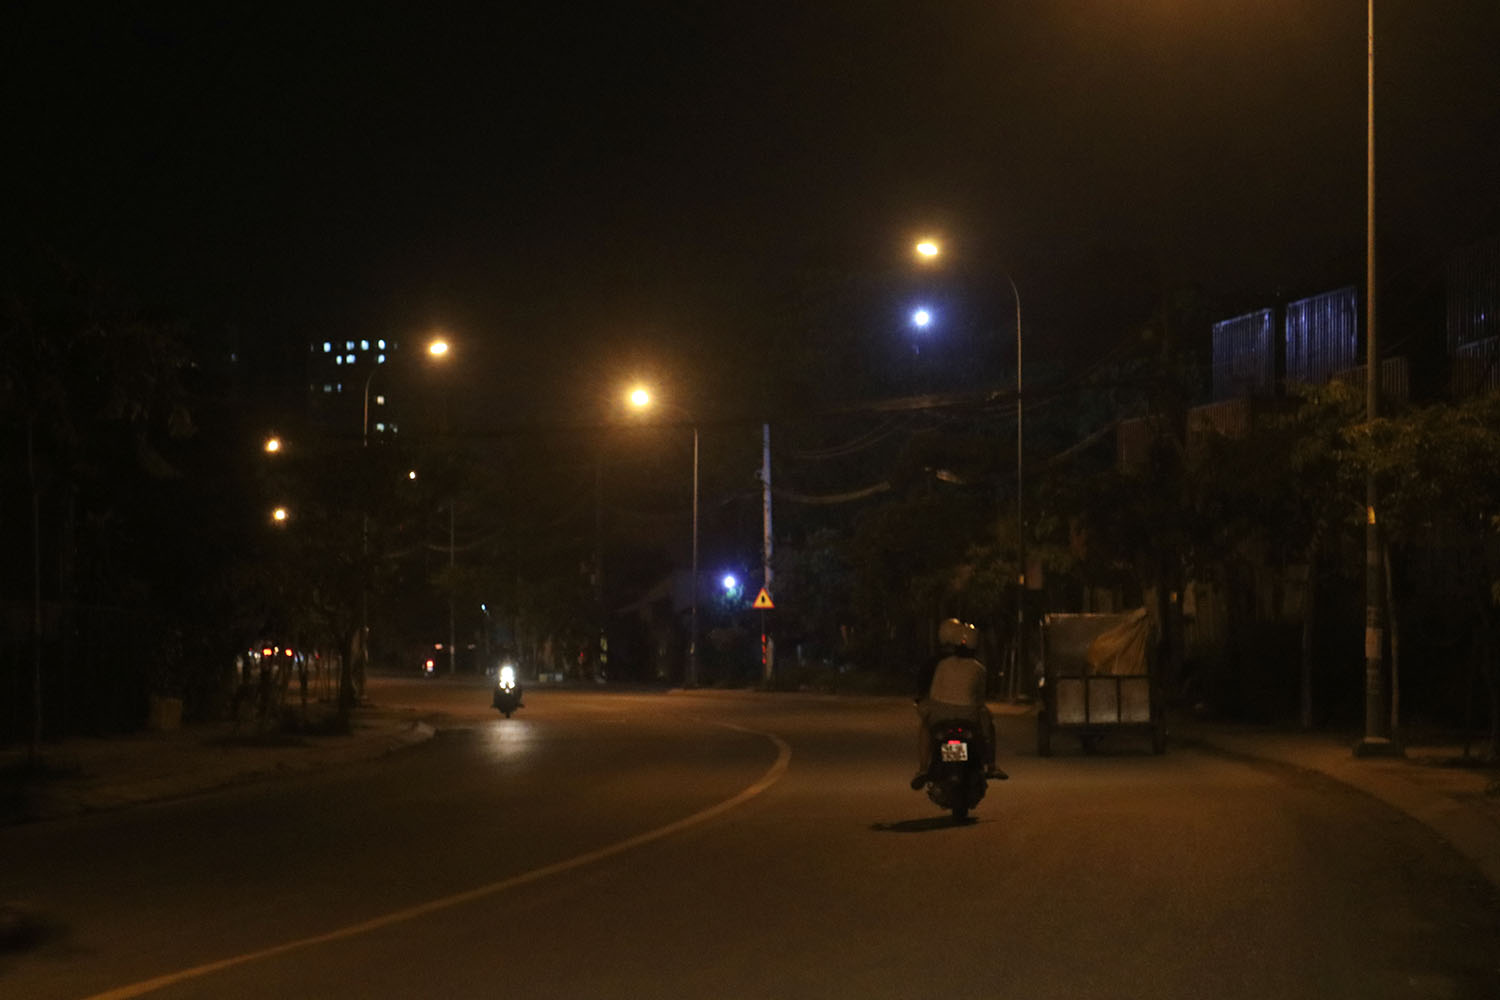 Đi đường ban đêm: Không gian yên tĩnh, ánh đèn đường lung linh và tâm hồn bình an, hãy cùng thưởng thức không khí đặc biệt của đường phố ban đêm qua bức ảnh đẹp mắt này.